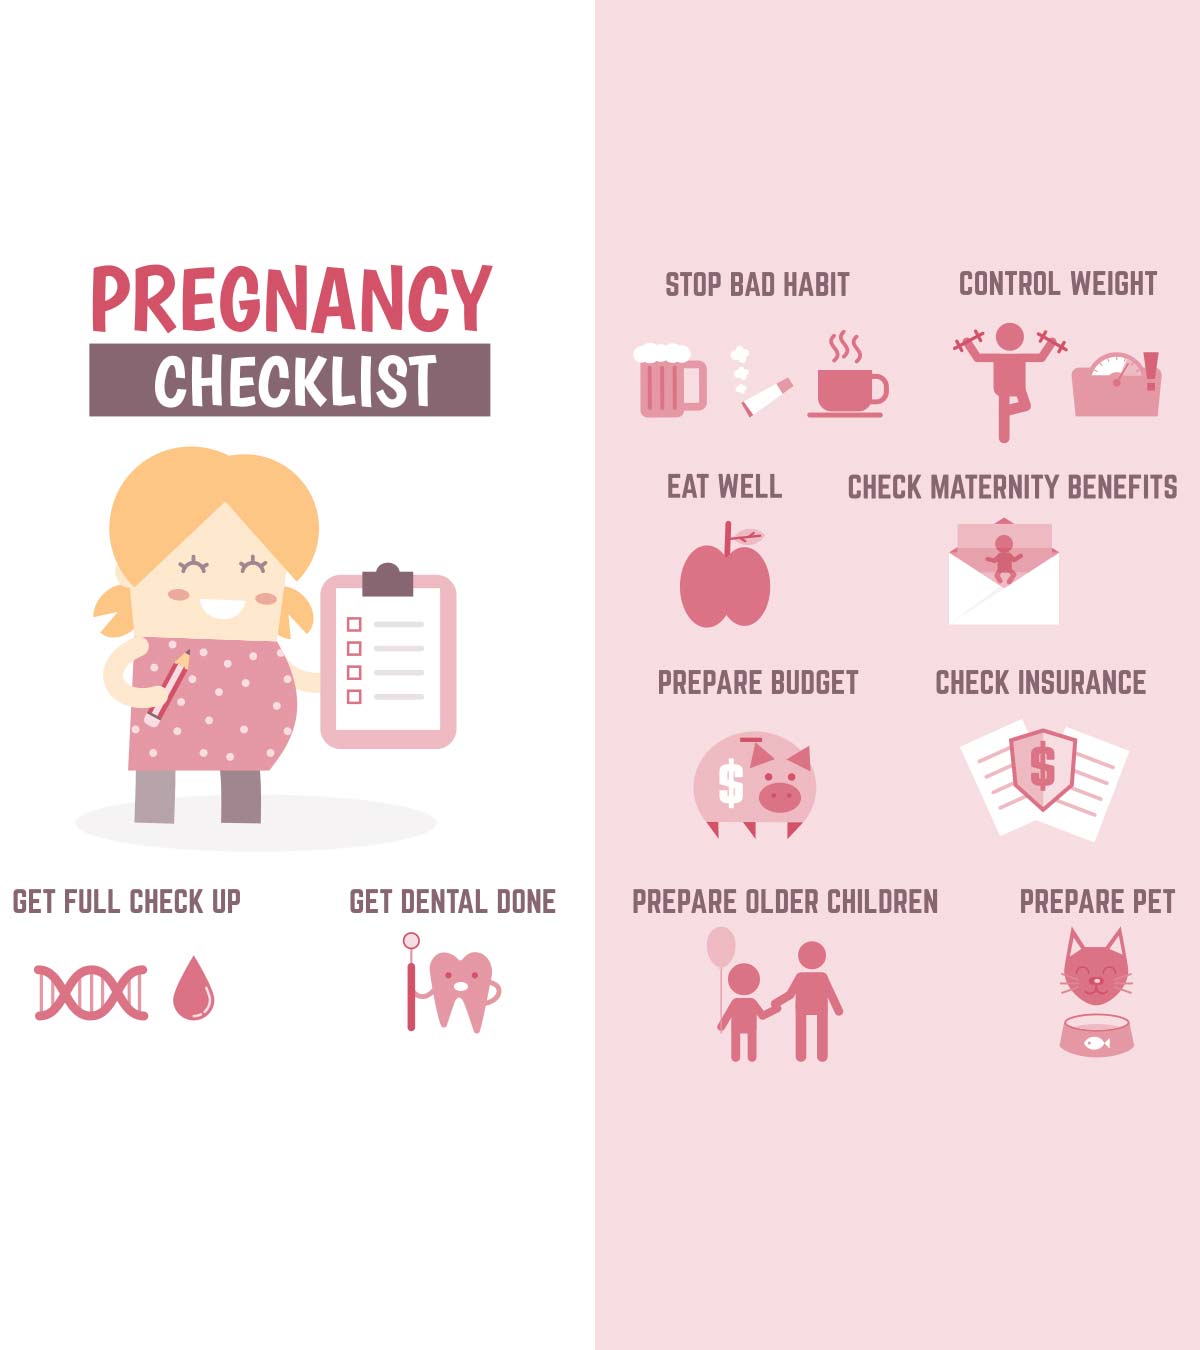 一个Must-Follow List Of Dos And Don'ts When Pregnant